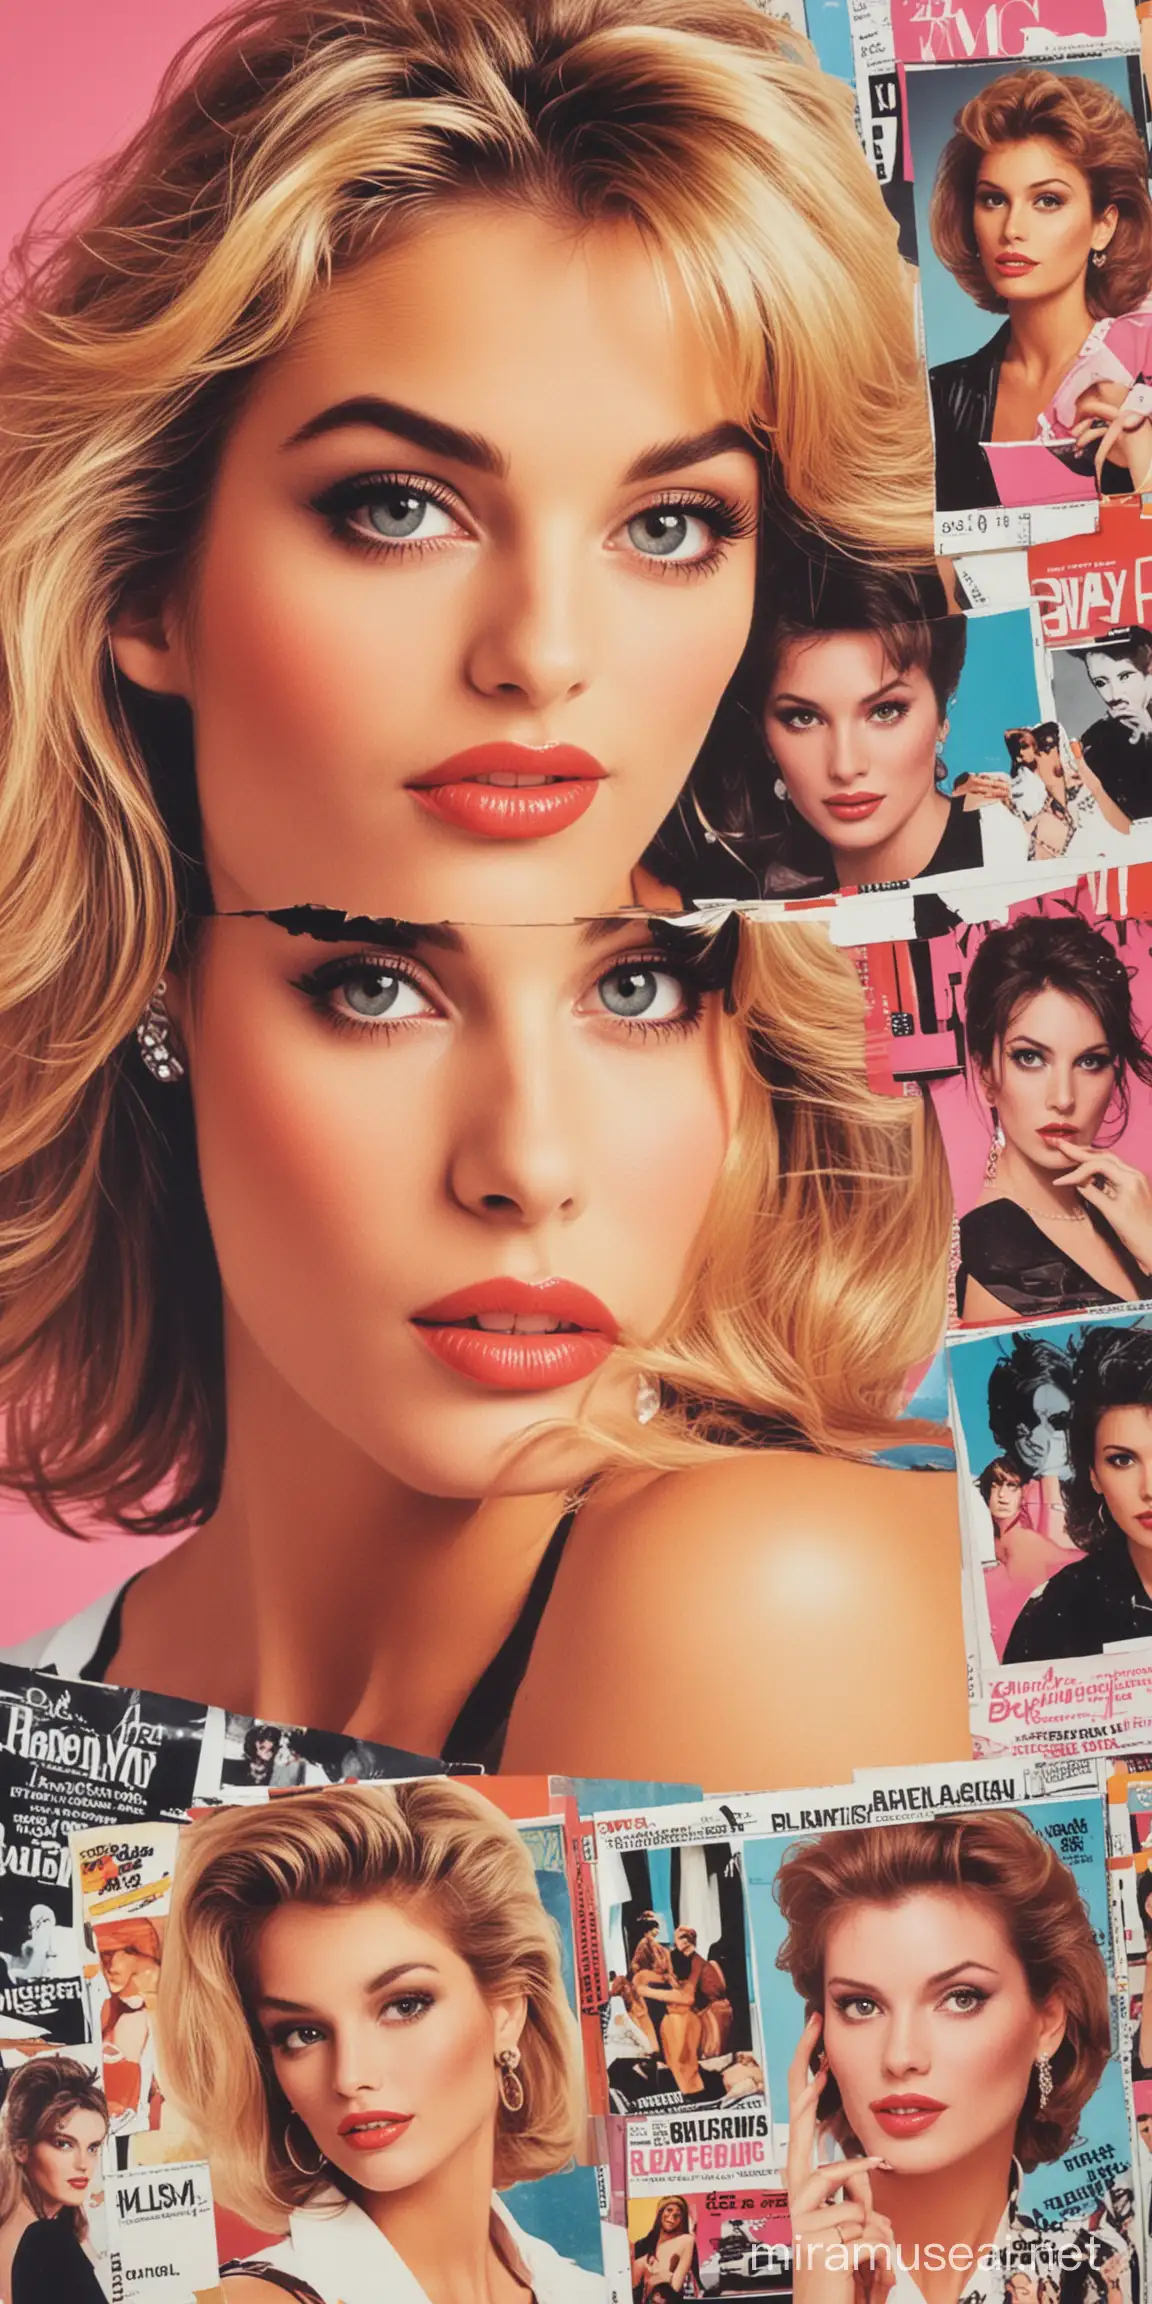 Pretty Woman in 80s Pop Art Collage Magazine Cover